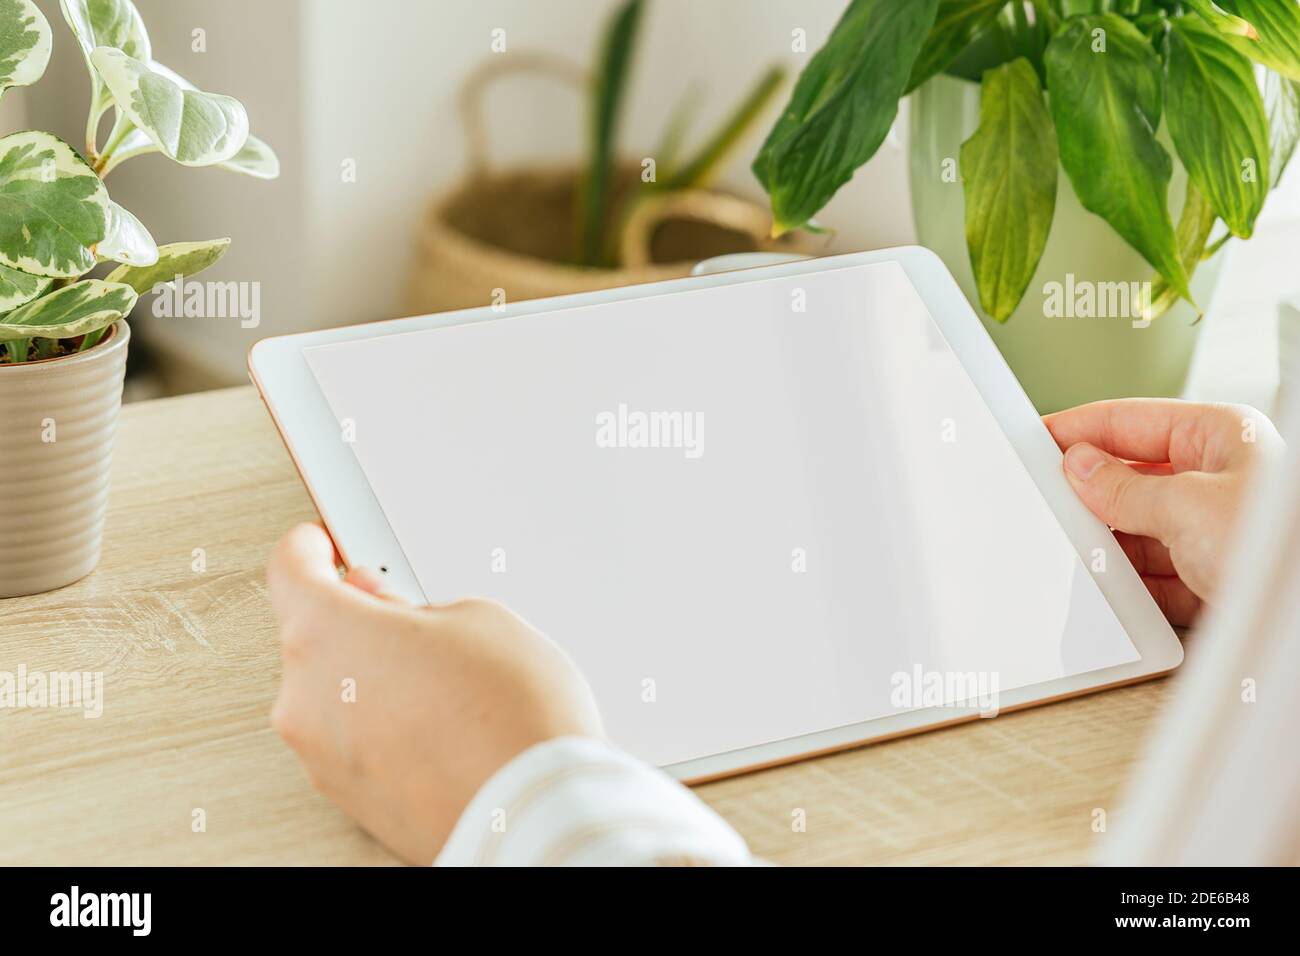 Tablet bianco schermo mockup tenuto da una mano di una donna che si trova nel soggiorno Foto Stock